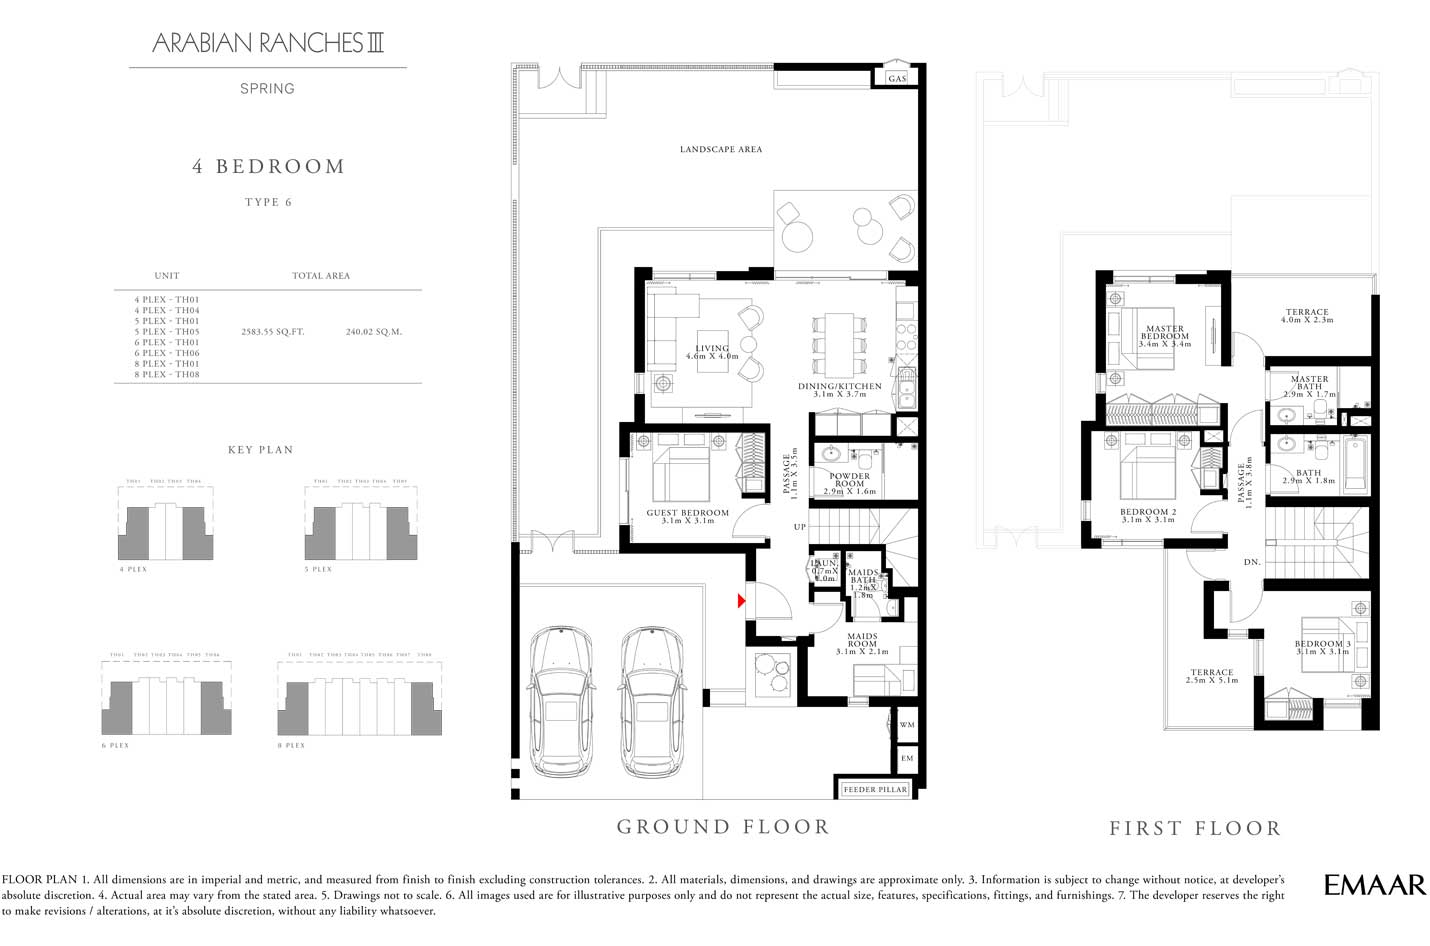 4-Bedroom-Type-6---Spring-Arabian-Ranches-Floor-Plan